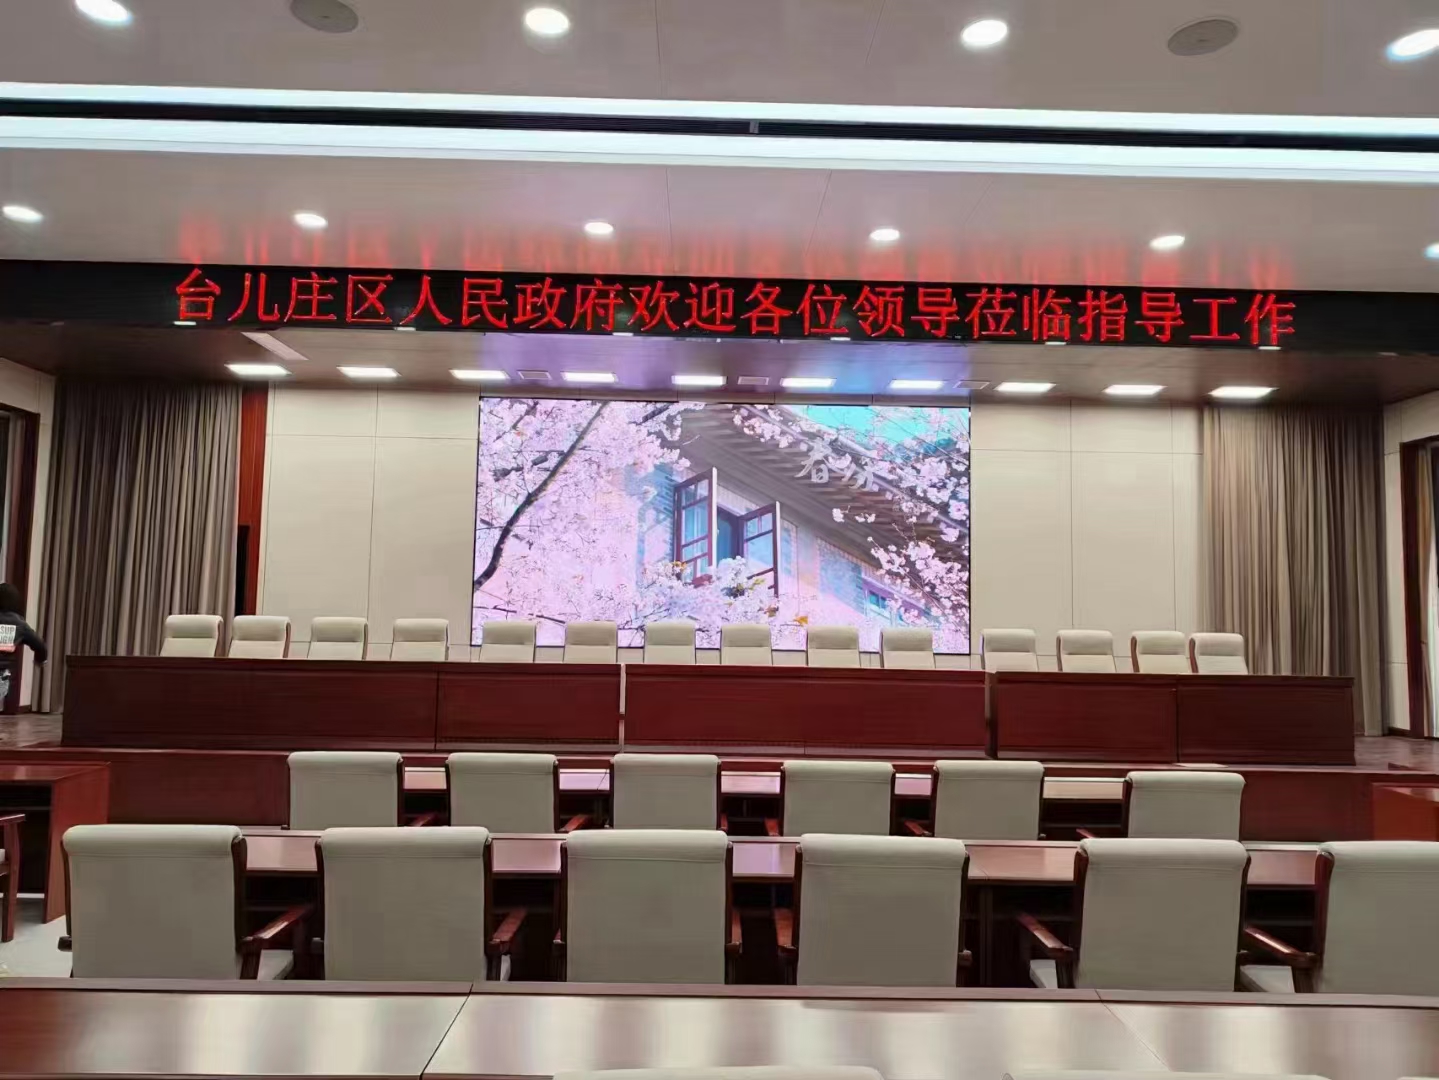 枣庄台儿庄人民政府室内报告大厅LED全彩显示屏